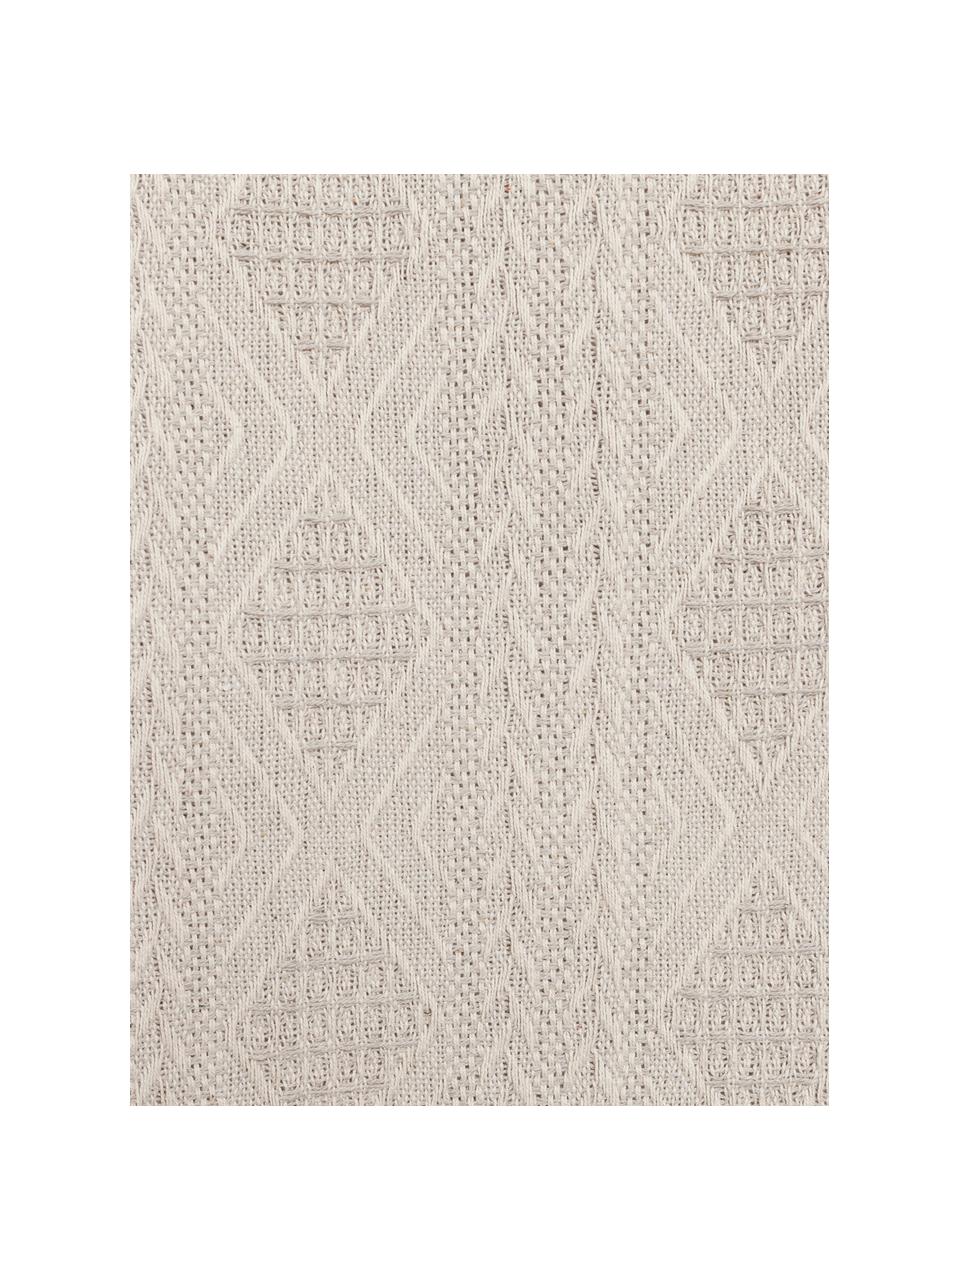 Narzuta Chicago, 100% bawełna, Beżowy, odcienie kości słoniowej, S 180 x D 260 cm